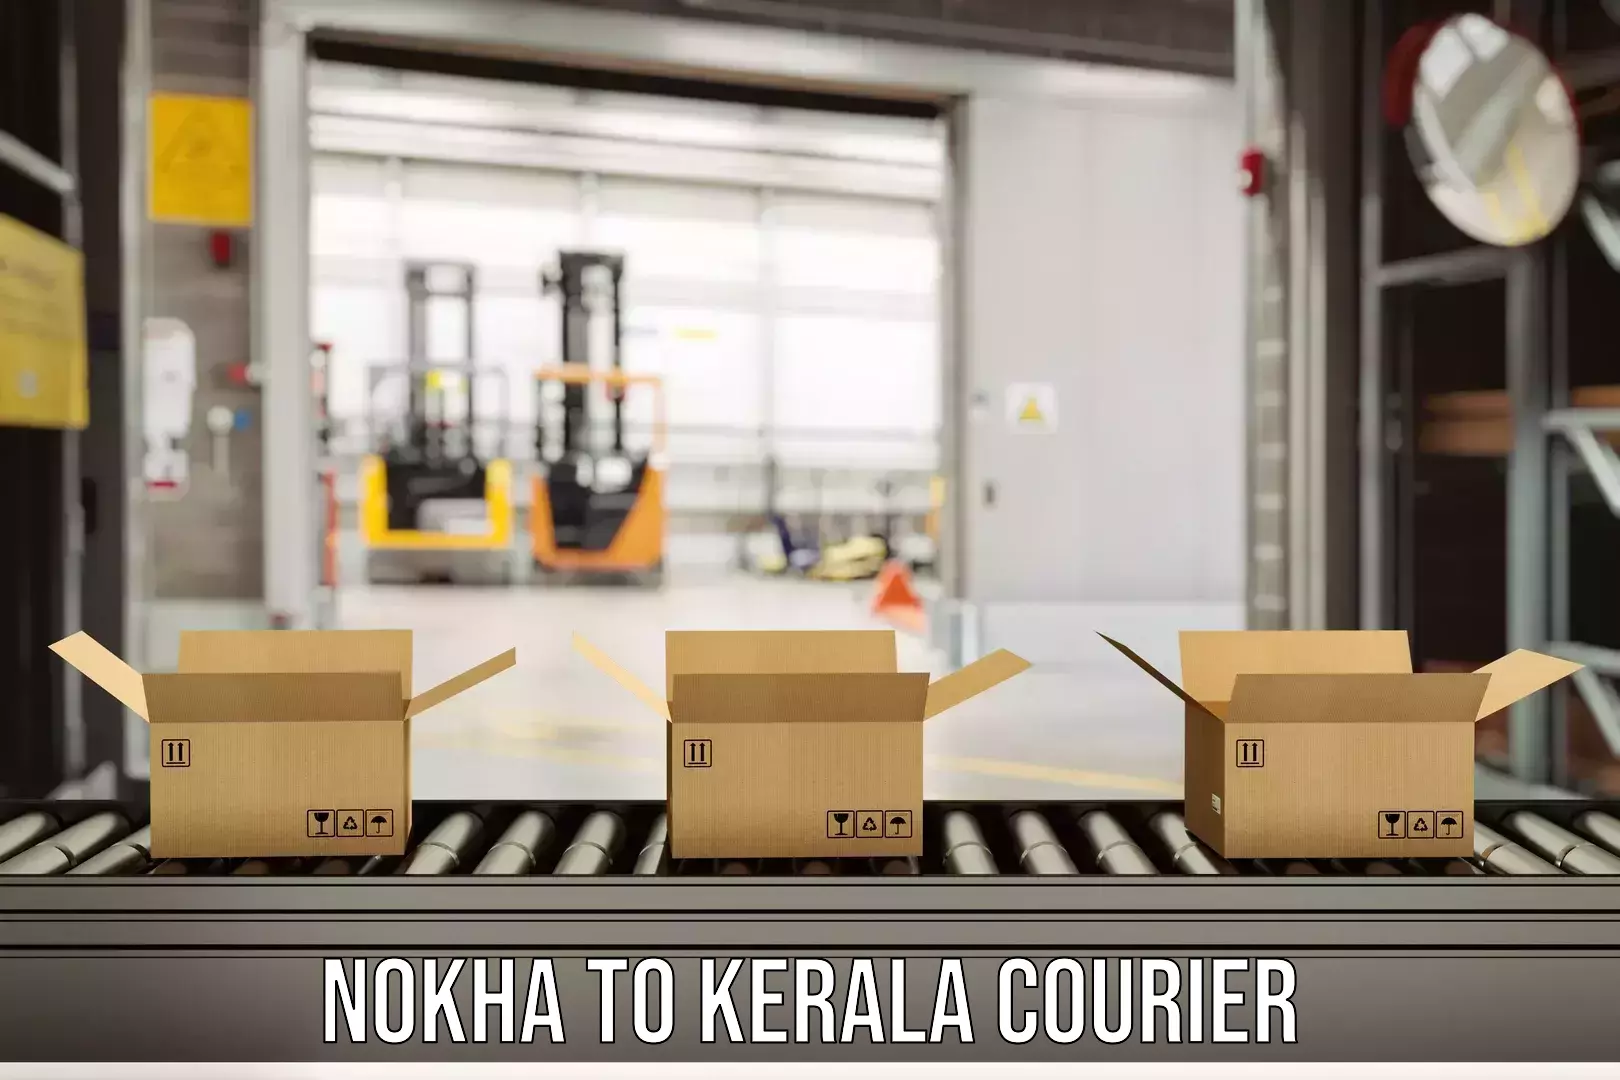 Quick dispatch service Nokha to Kerala